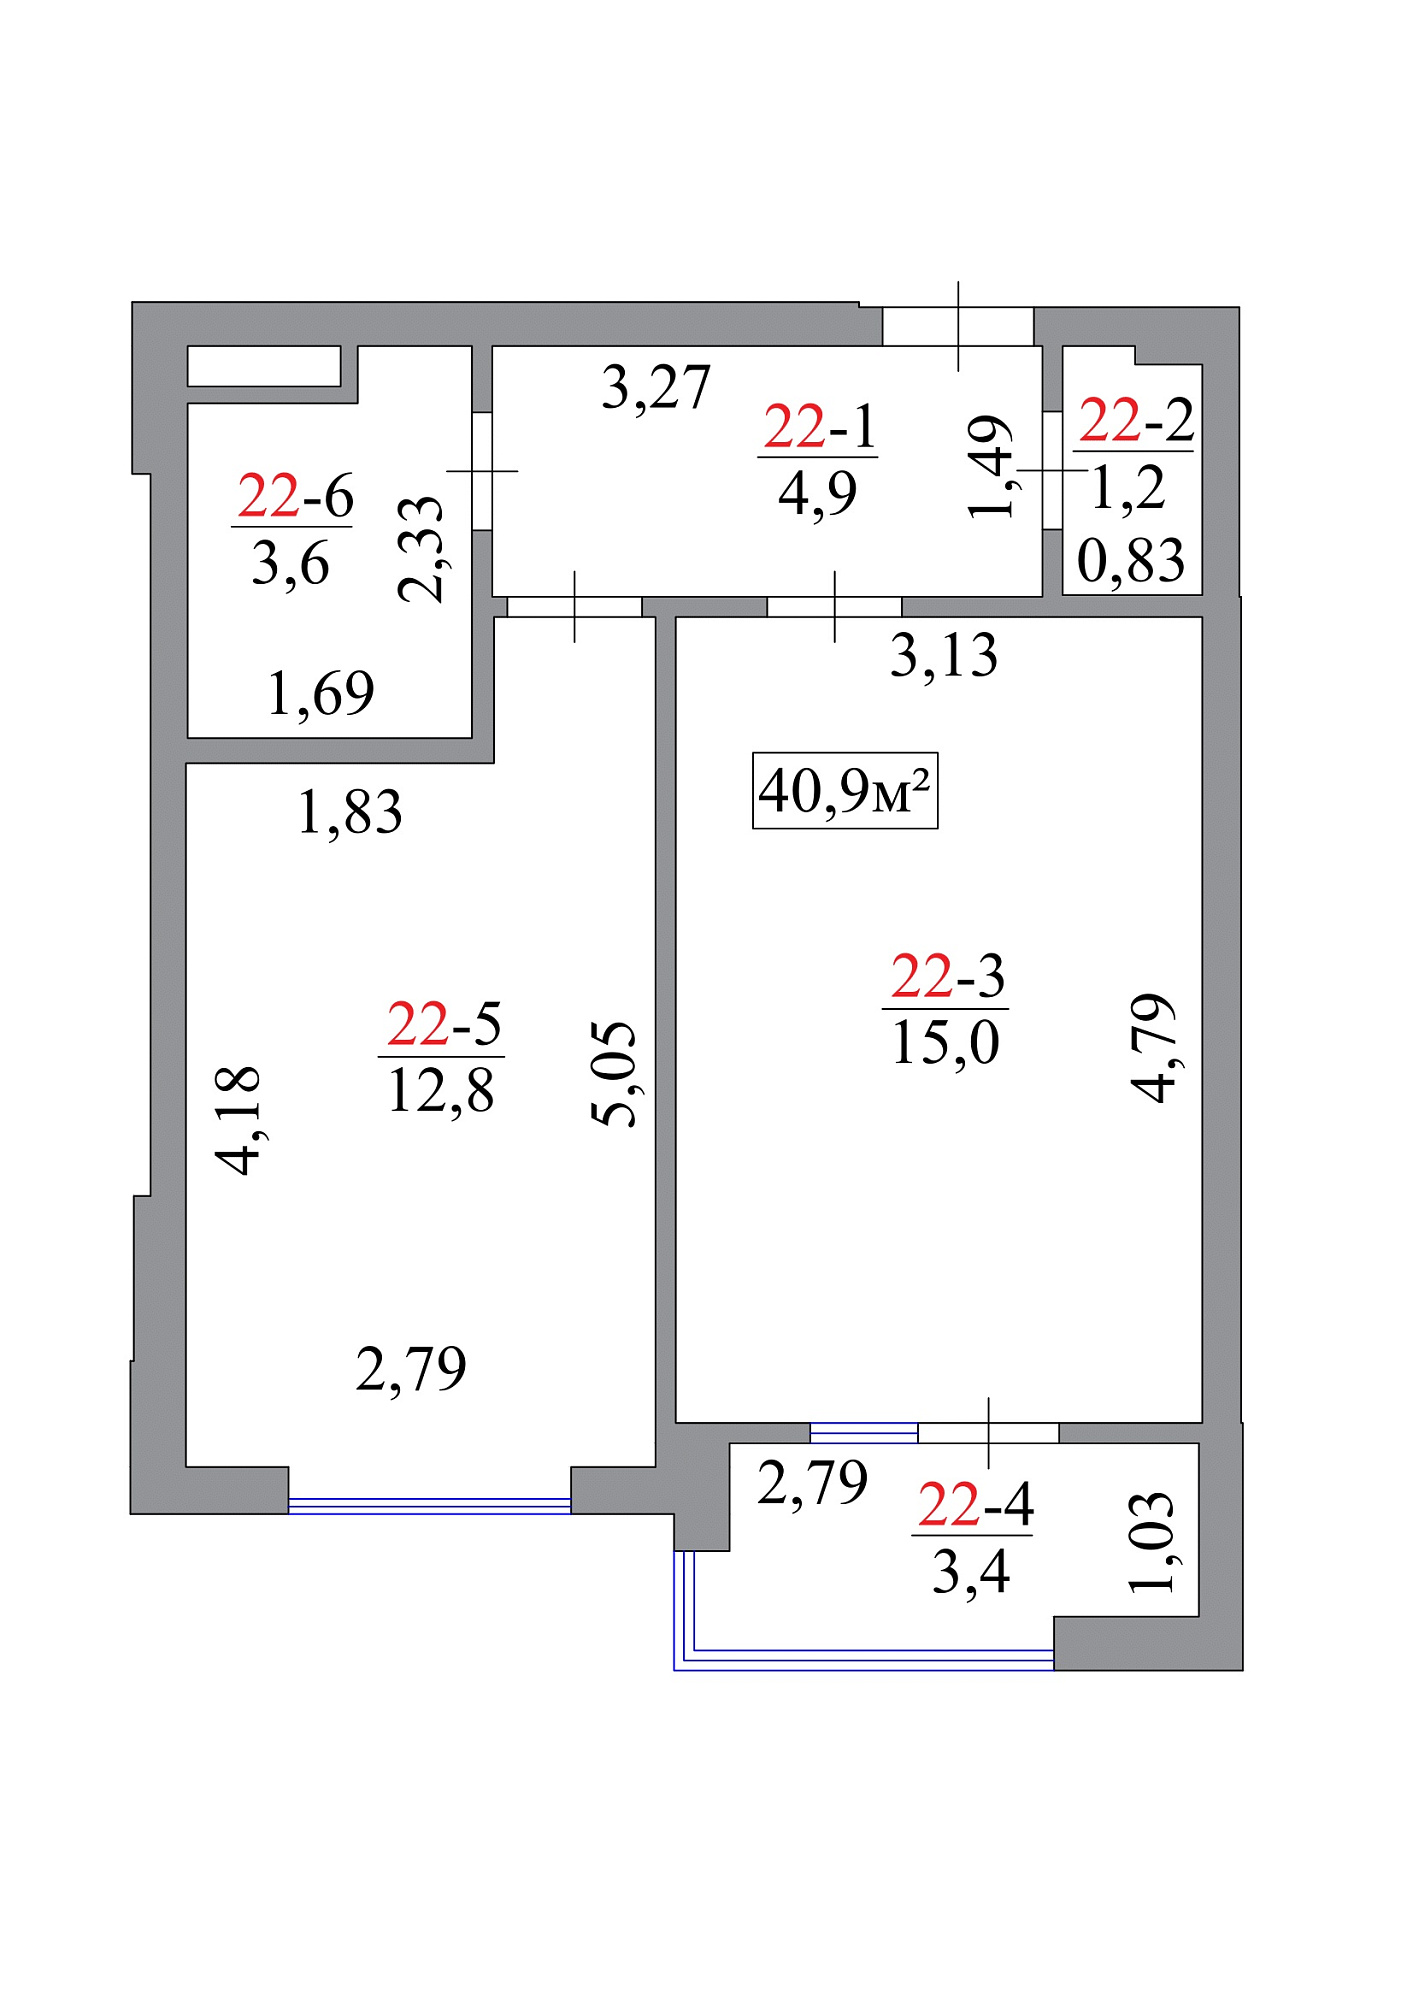 Планировка 1-к квартира площей 40.9м2, AB-07-03/00020.